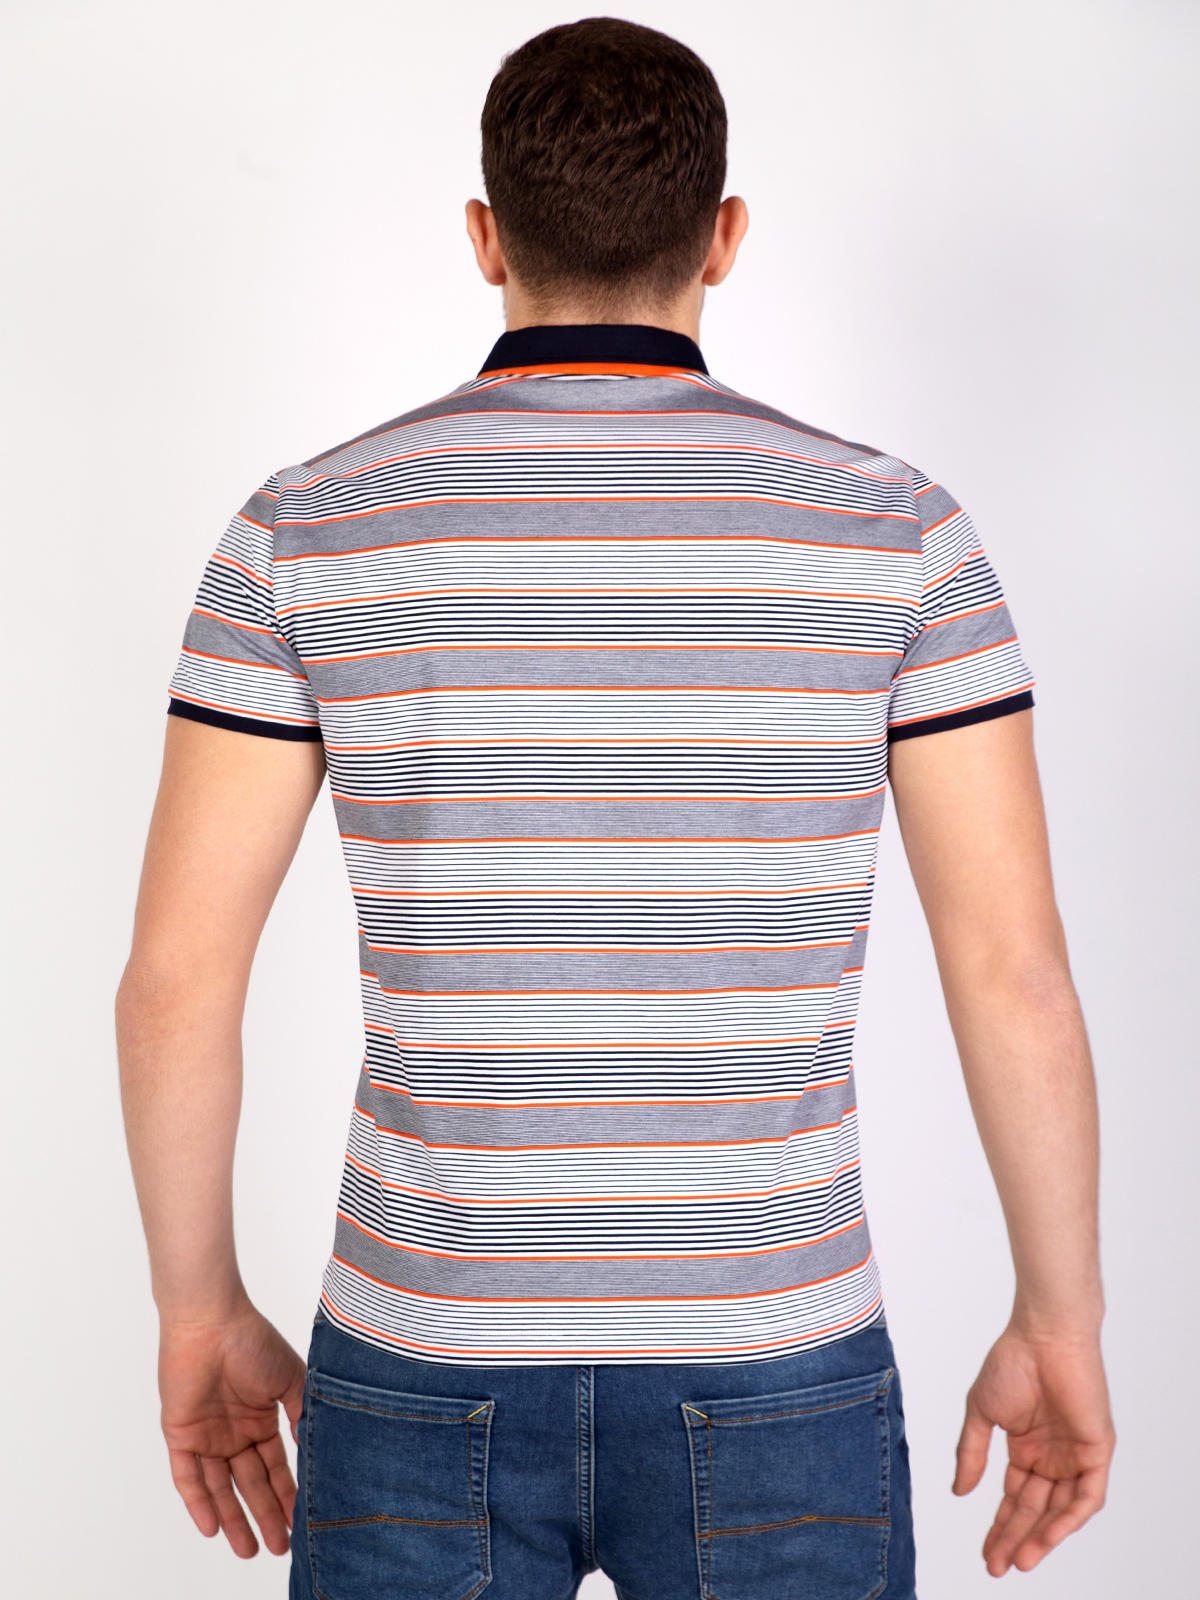 Ριγέ μπλούζα σε τρία χρώματα - 75003 € 38.24 img3